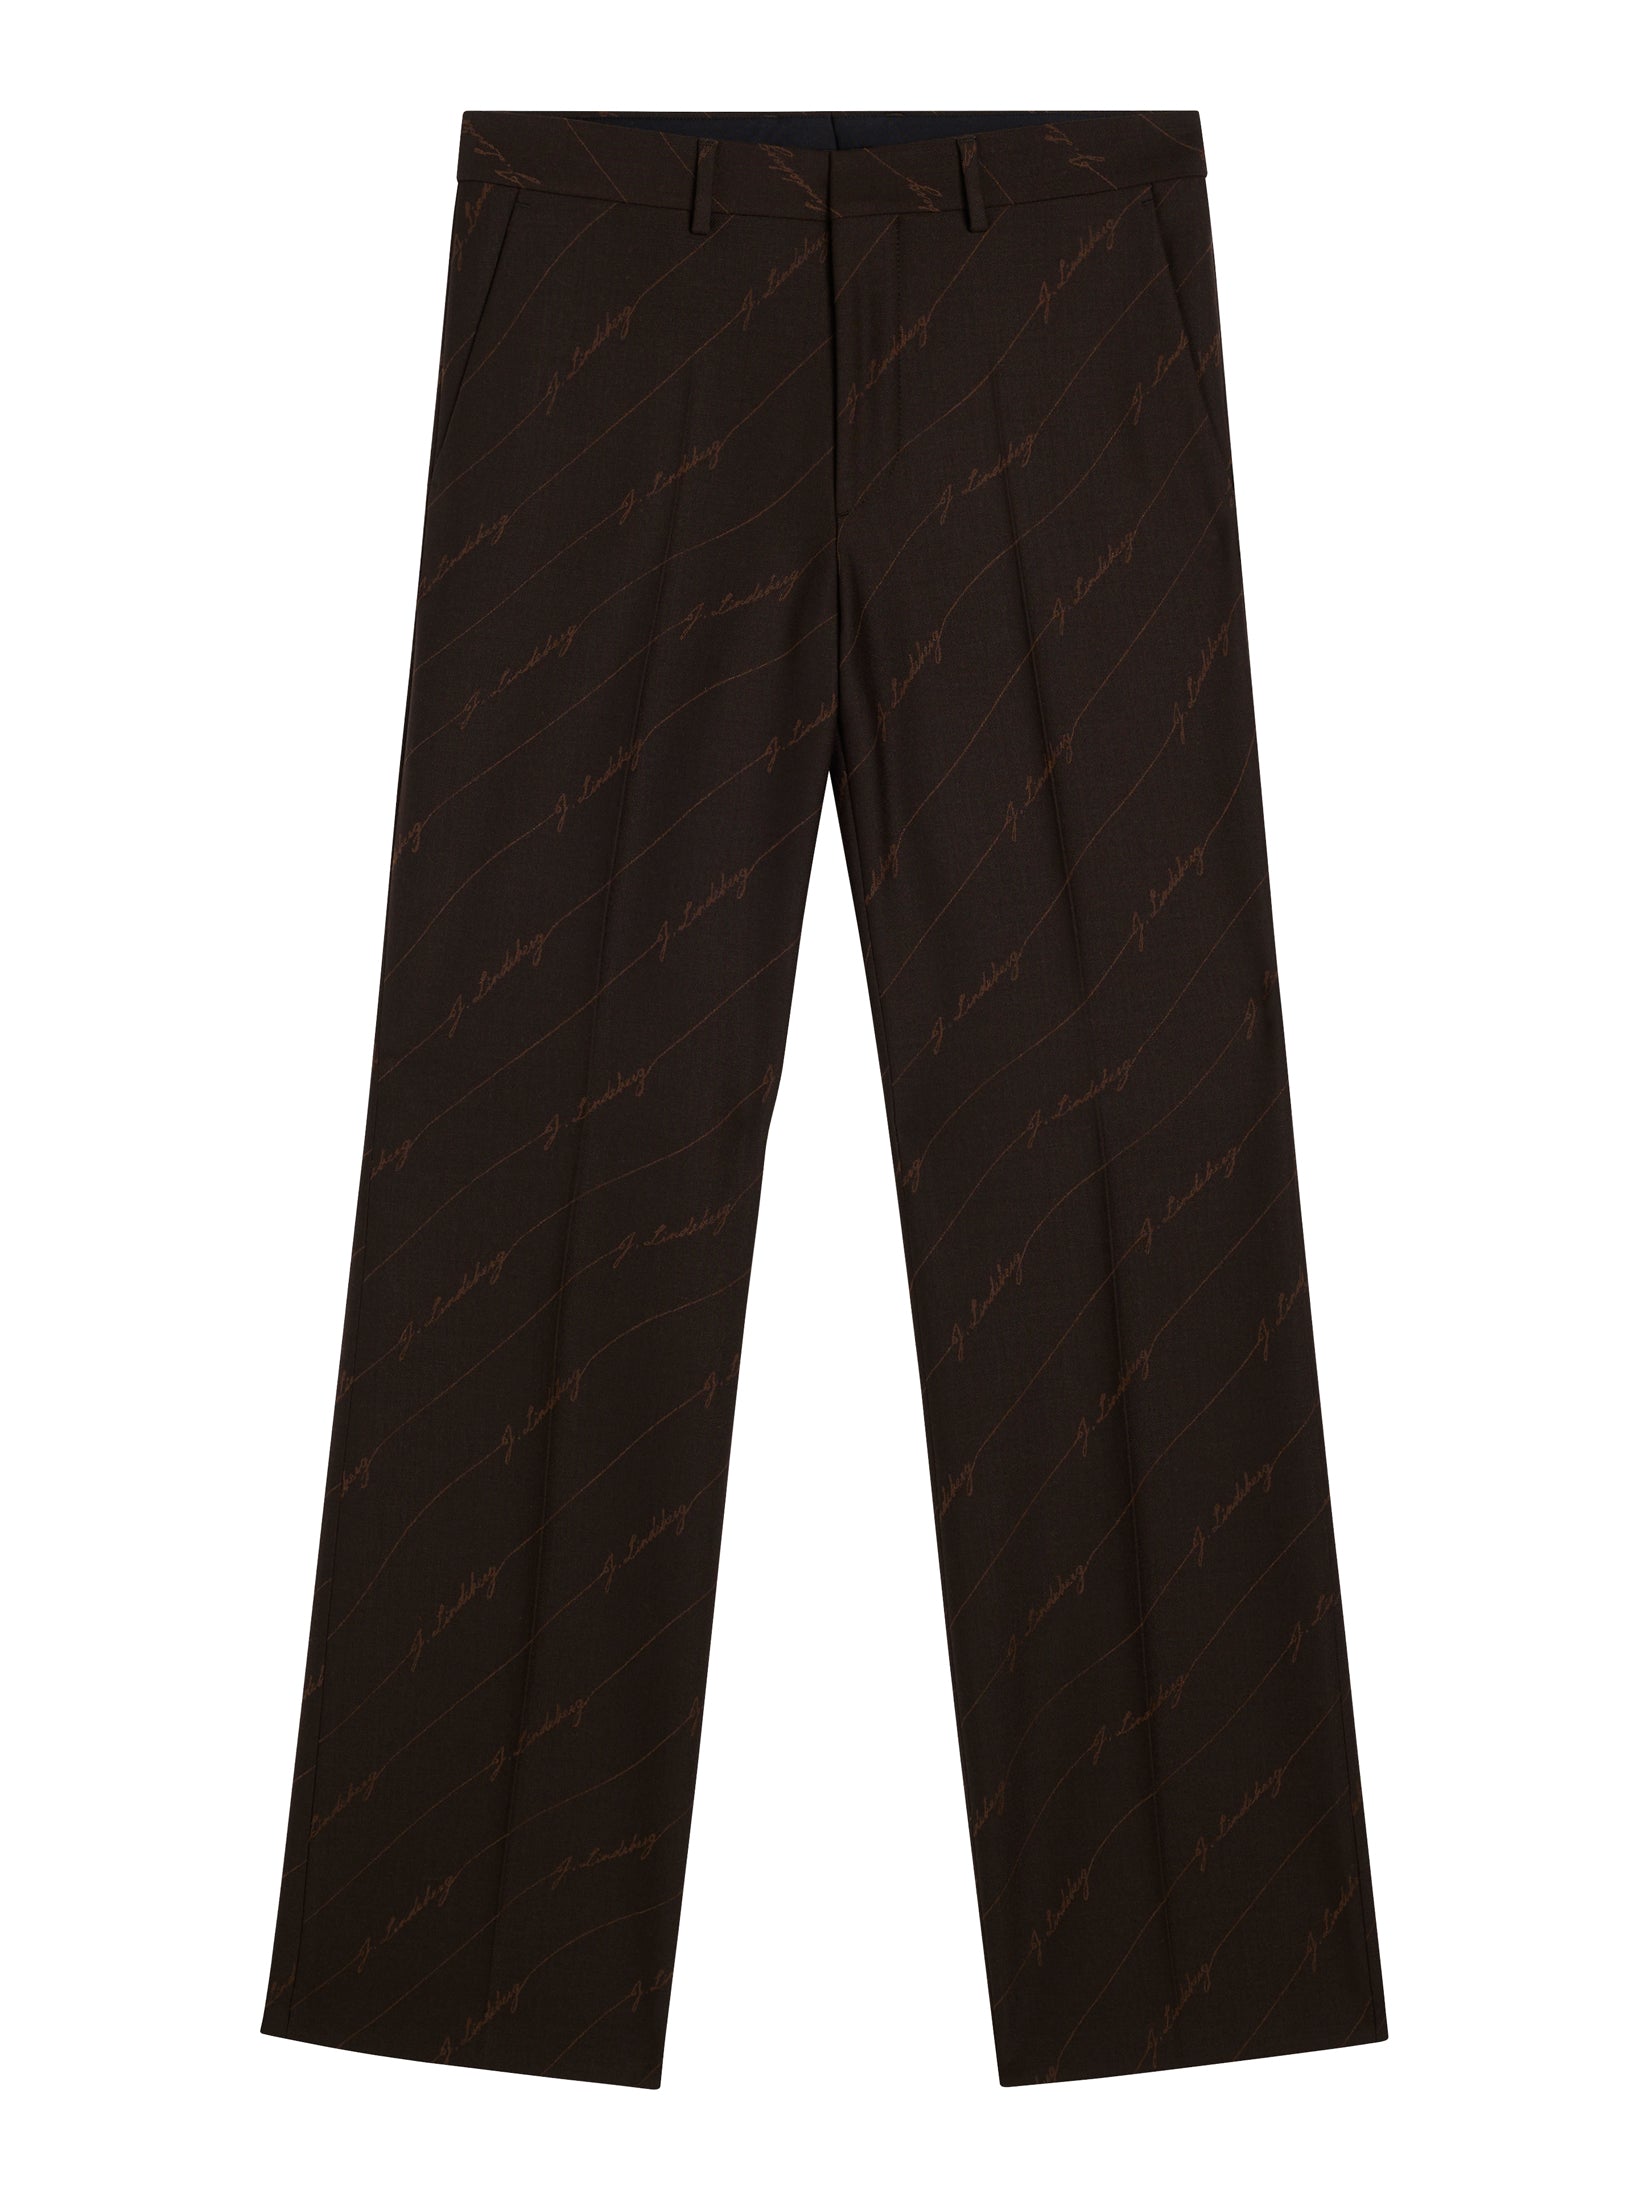 Gomor Brown Stripe Pants